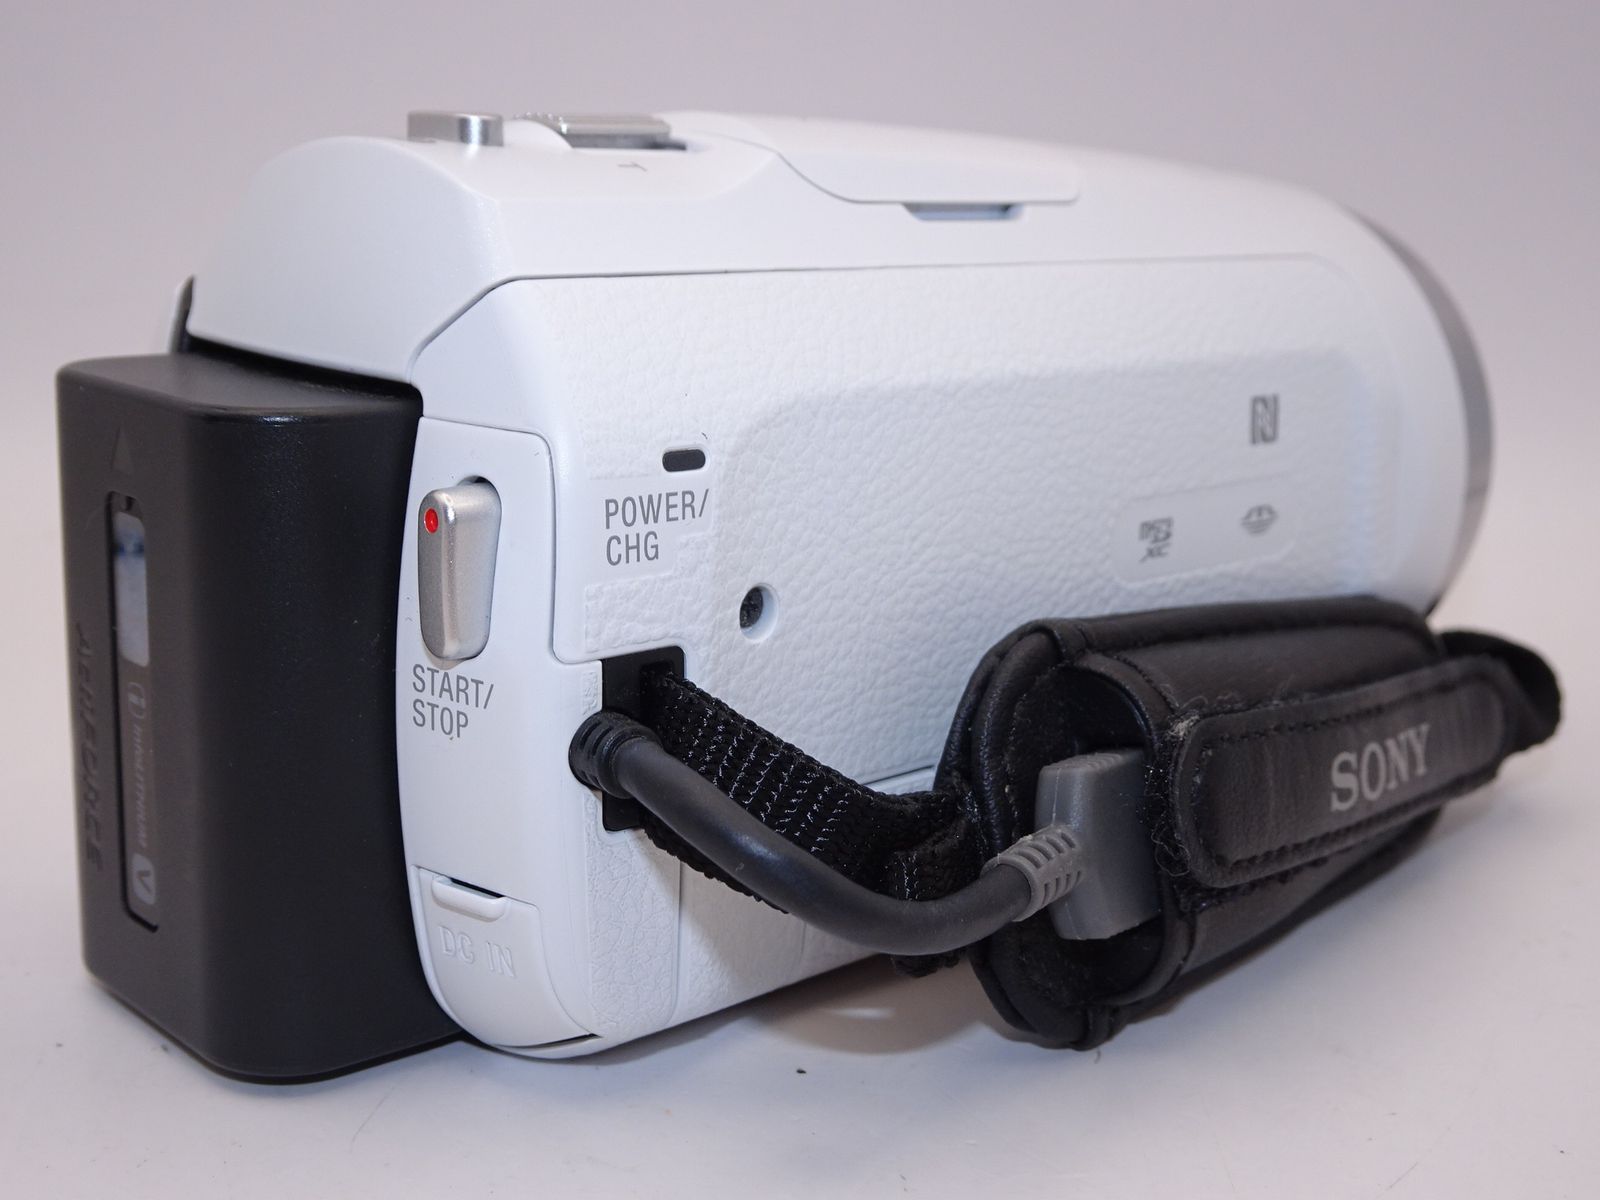 ソニー SONY ビデオカメラ Handycam HDR-PJ675 WC - メルカリ